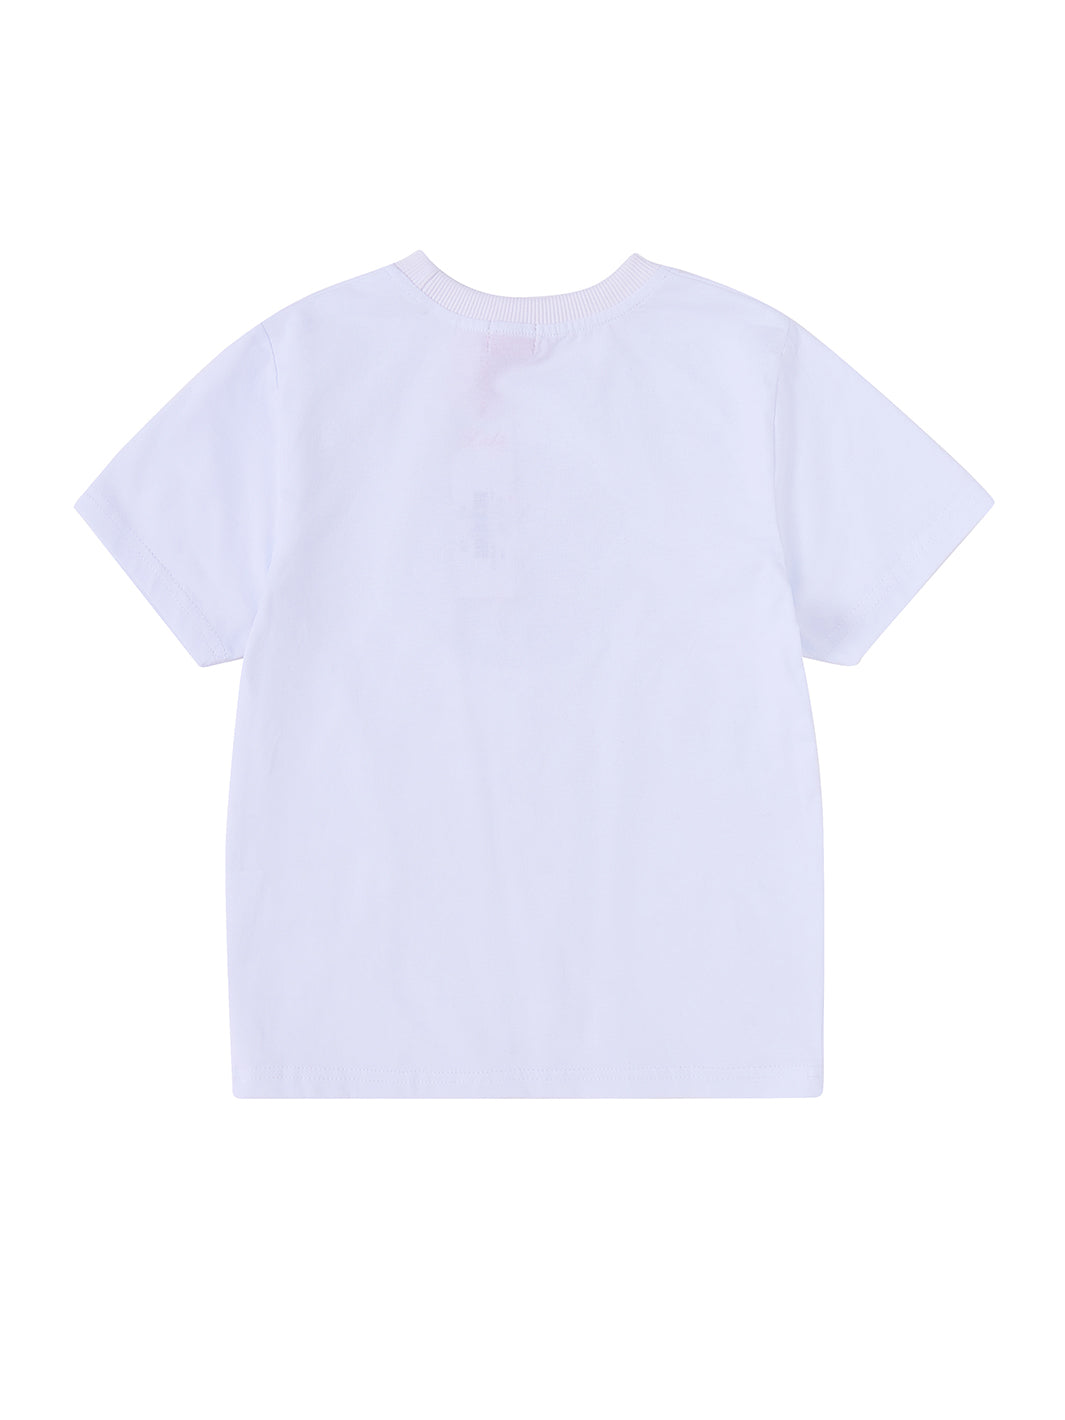 Star Print Short Sleeve T-shirt